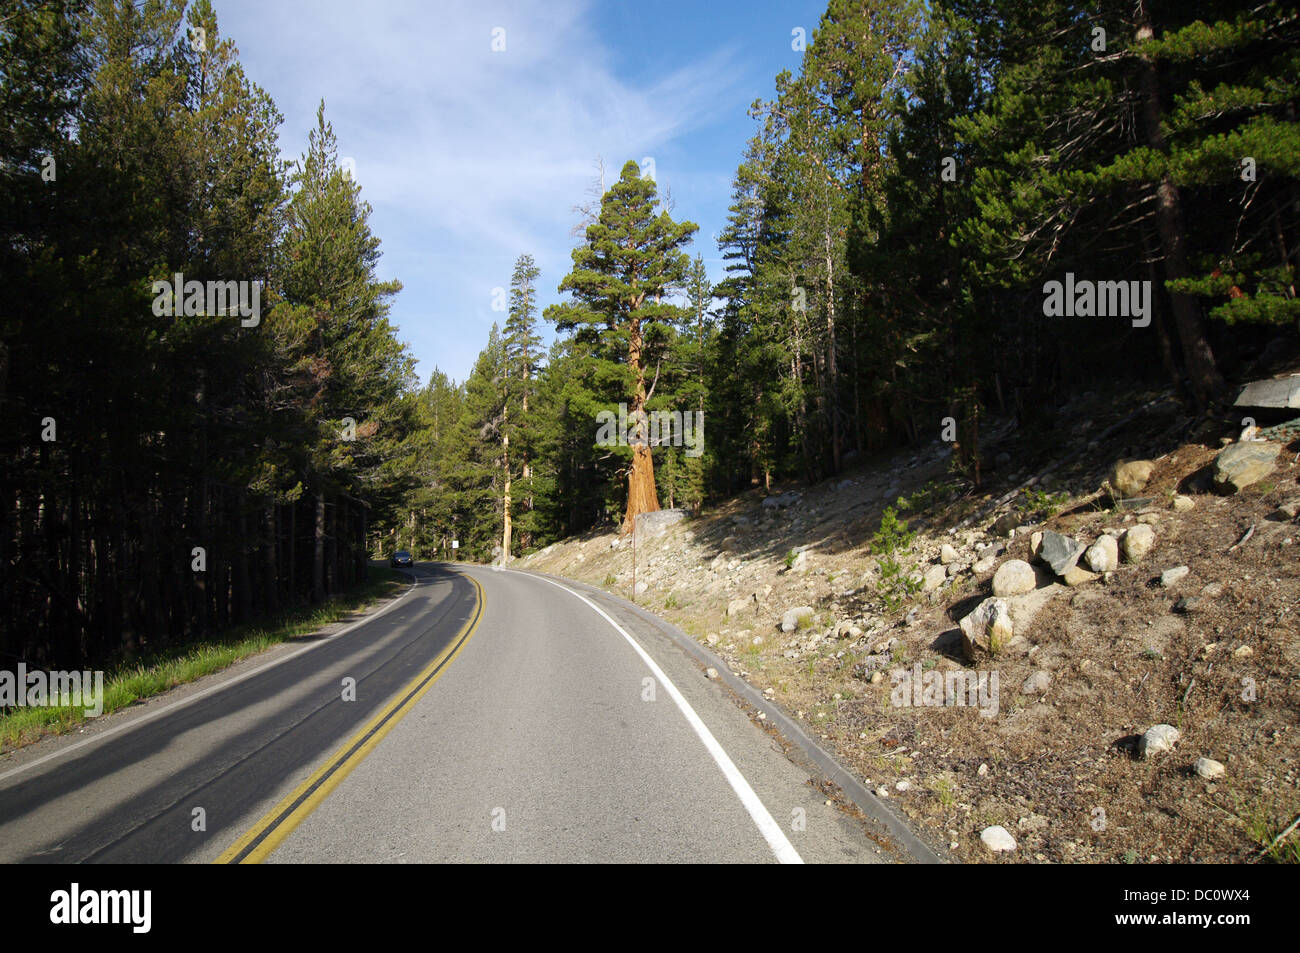 Tioga Pass - un col dans les montagnes de la Sierra Nevada qui traverse le Parc National de Yosemite Banque D'Images